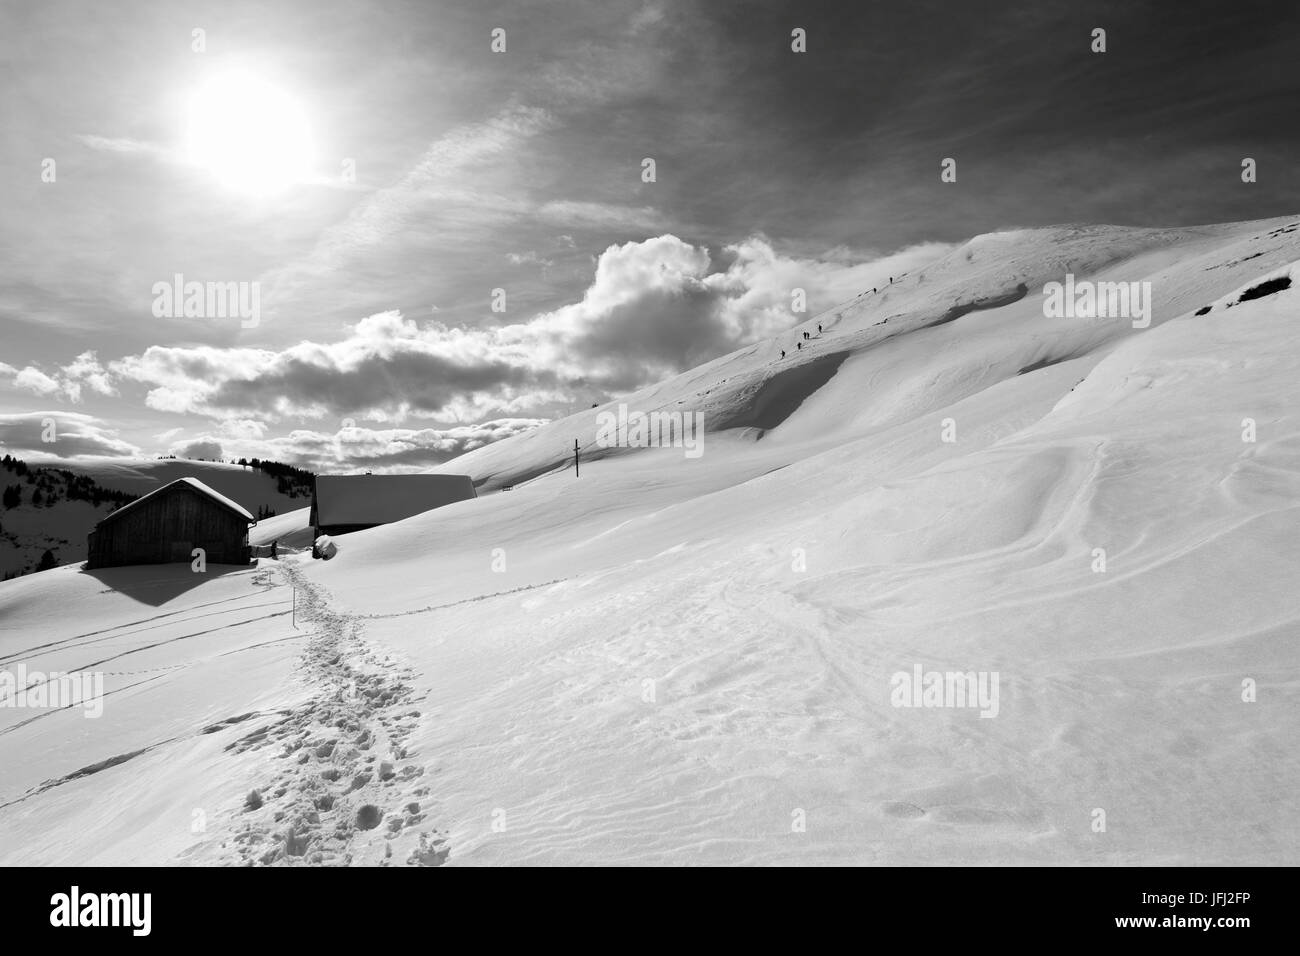 Kugel Alp in inverno con il vertice di Hohe Kugel Foto Stock